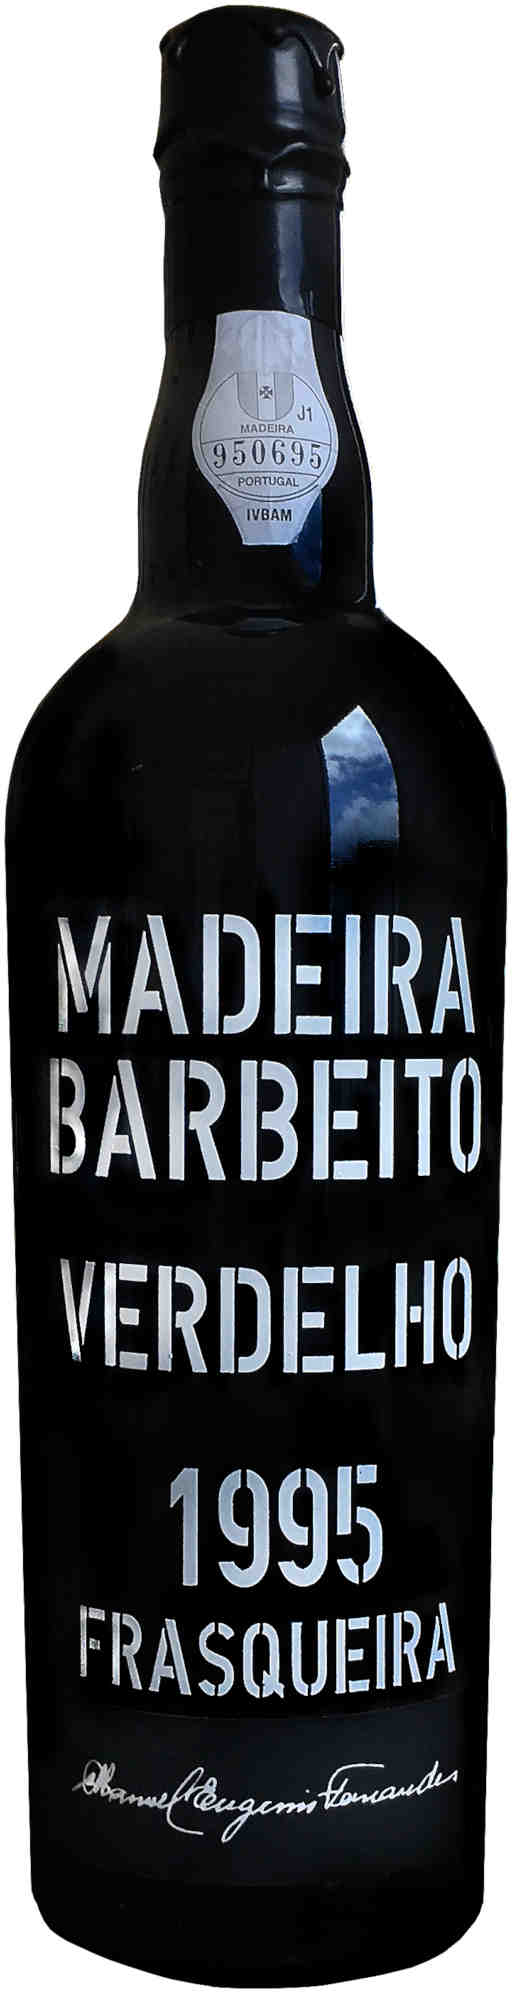 Barbeito-Verdelho-Frasqueira1995